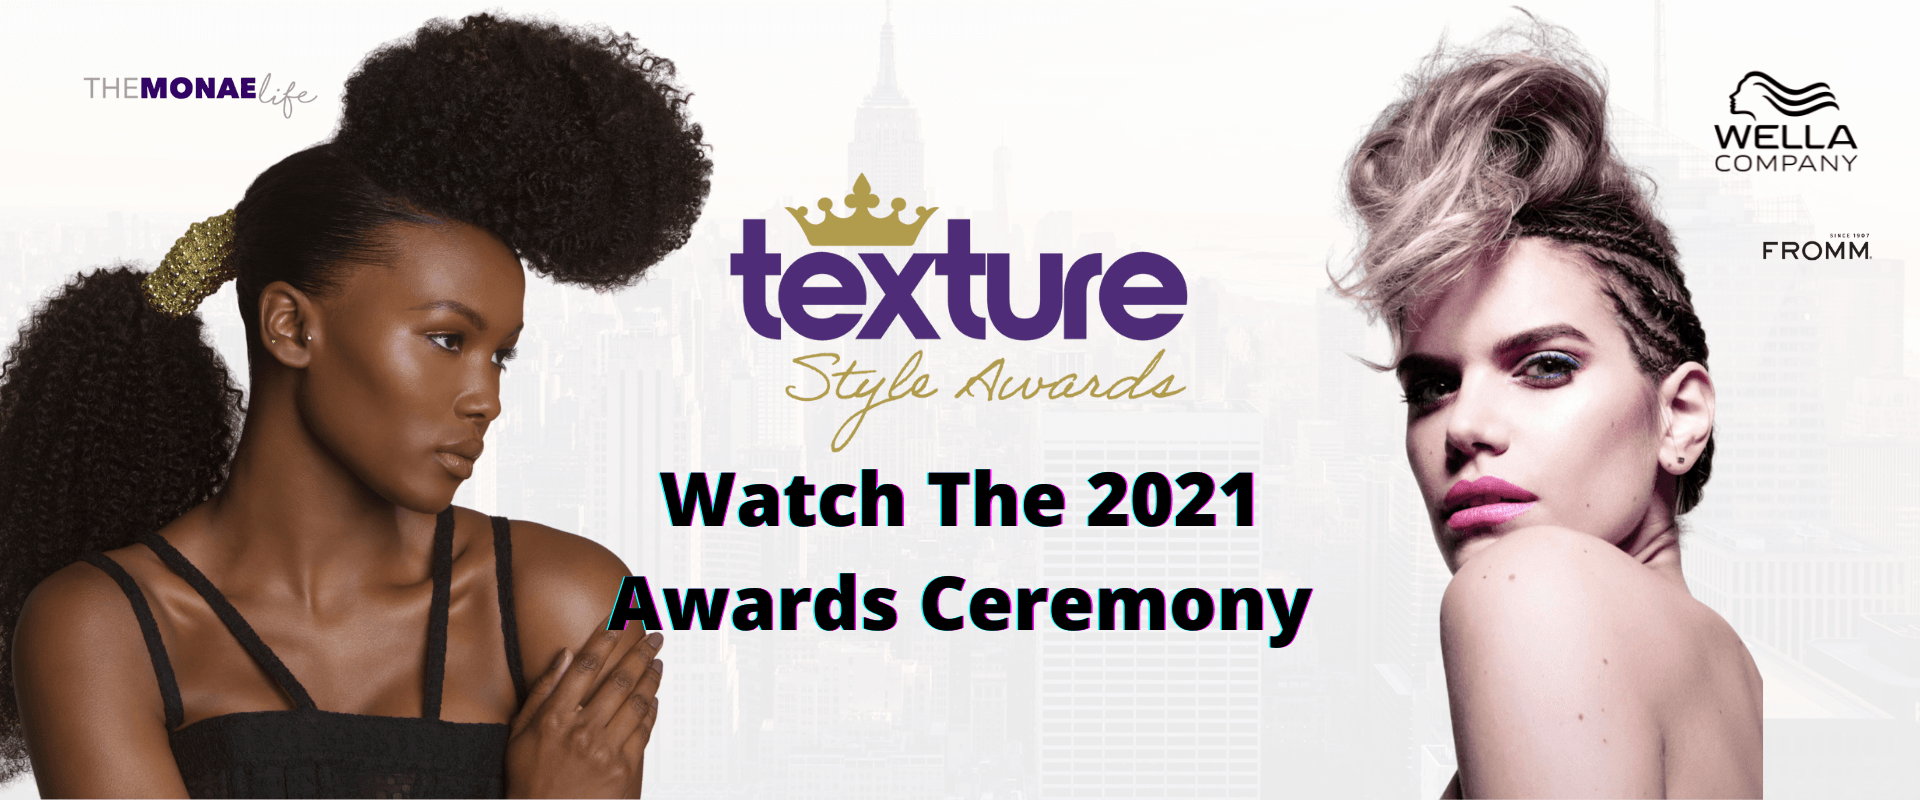 Texture Style Awards - Texture Style Awards